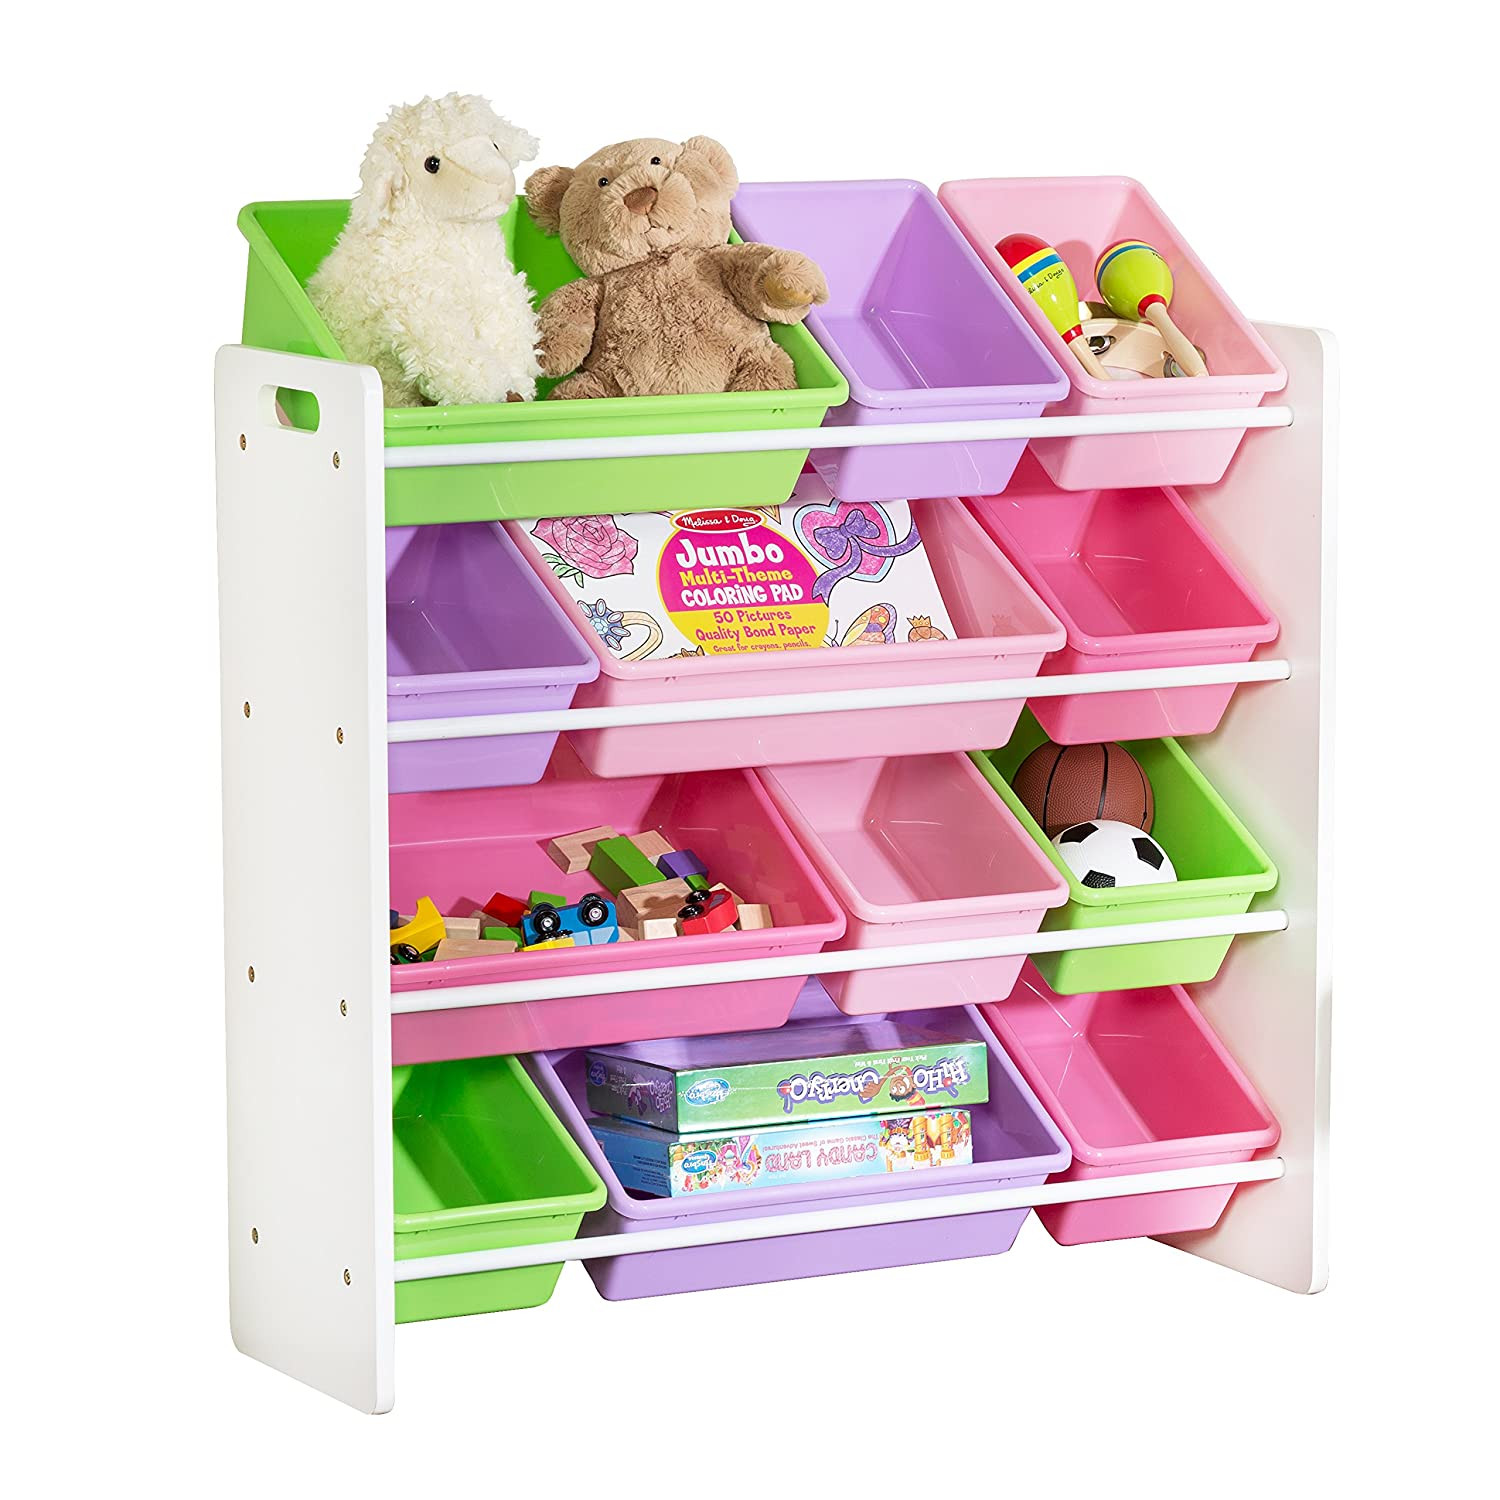 Kids Storage Organizer
 Top 15 Best Toddler Toy Storage Organizers in 2019